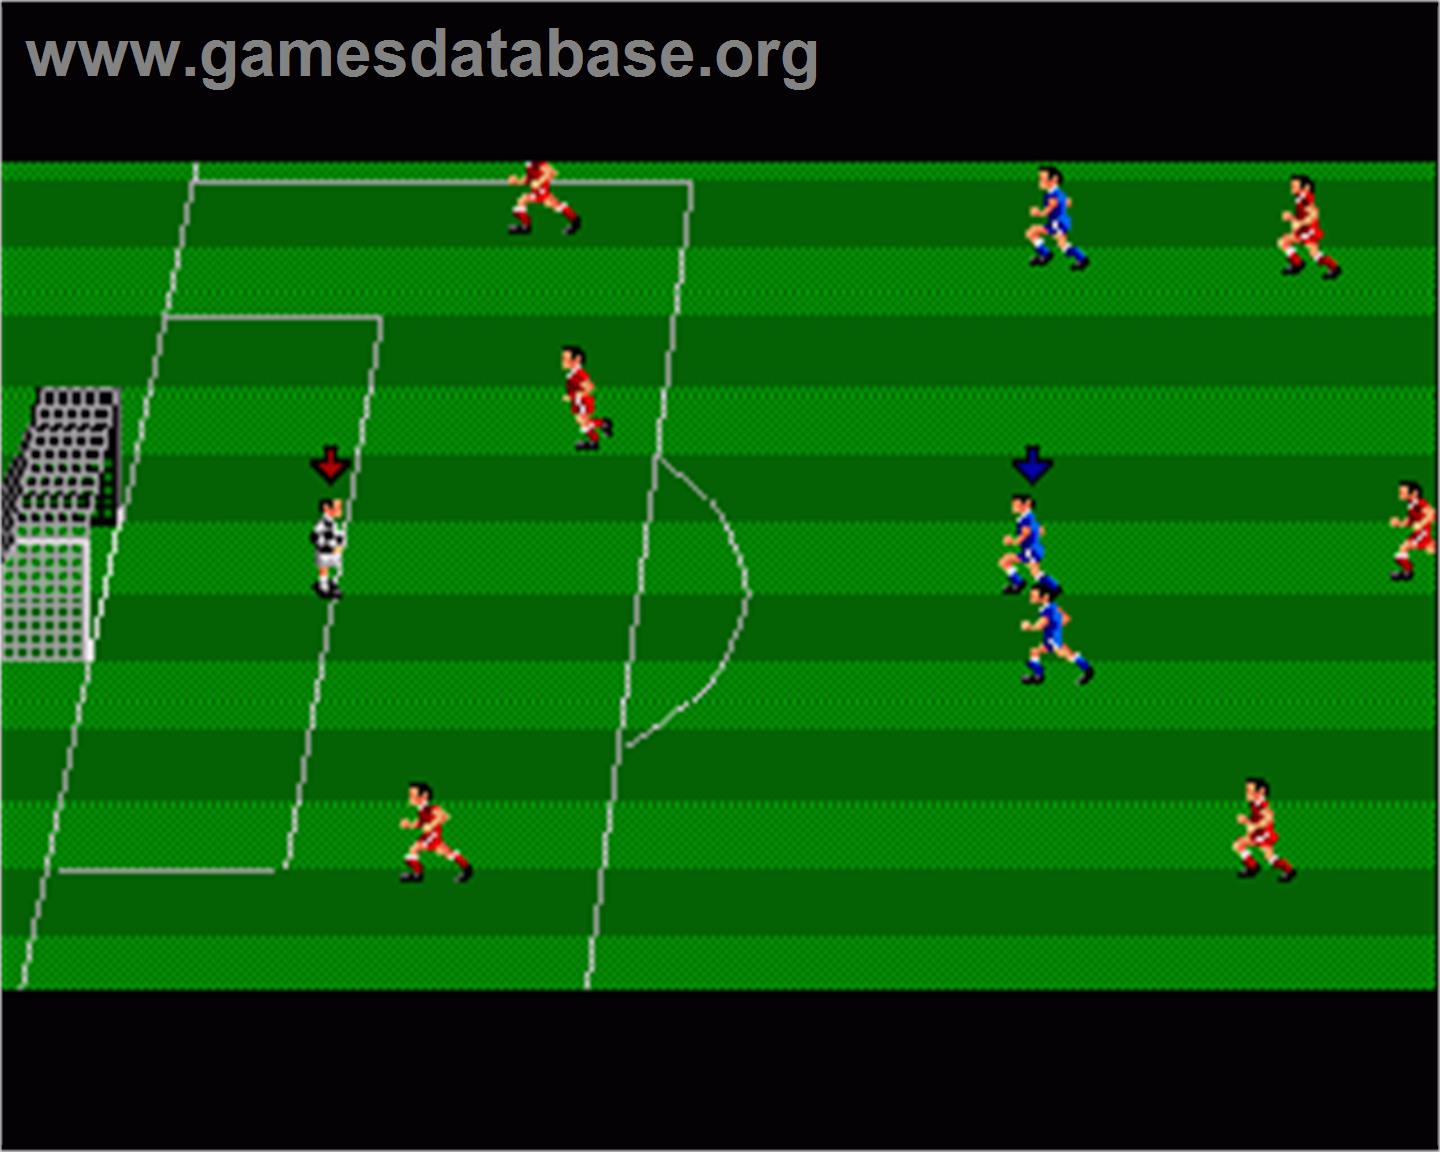 Kenny Dalglish Soccer Match - Commodore Amiga - Artwork - In Game